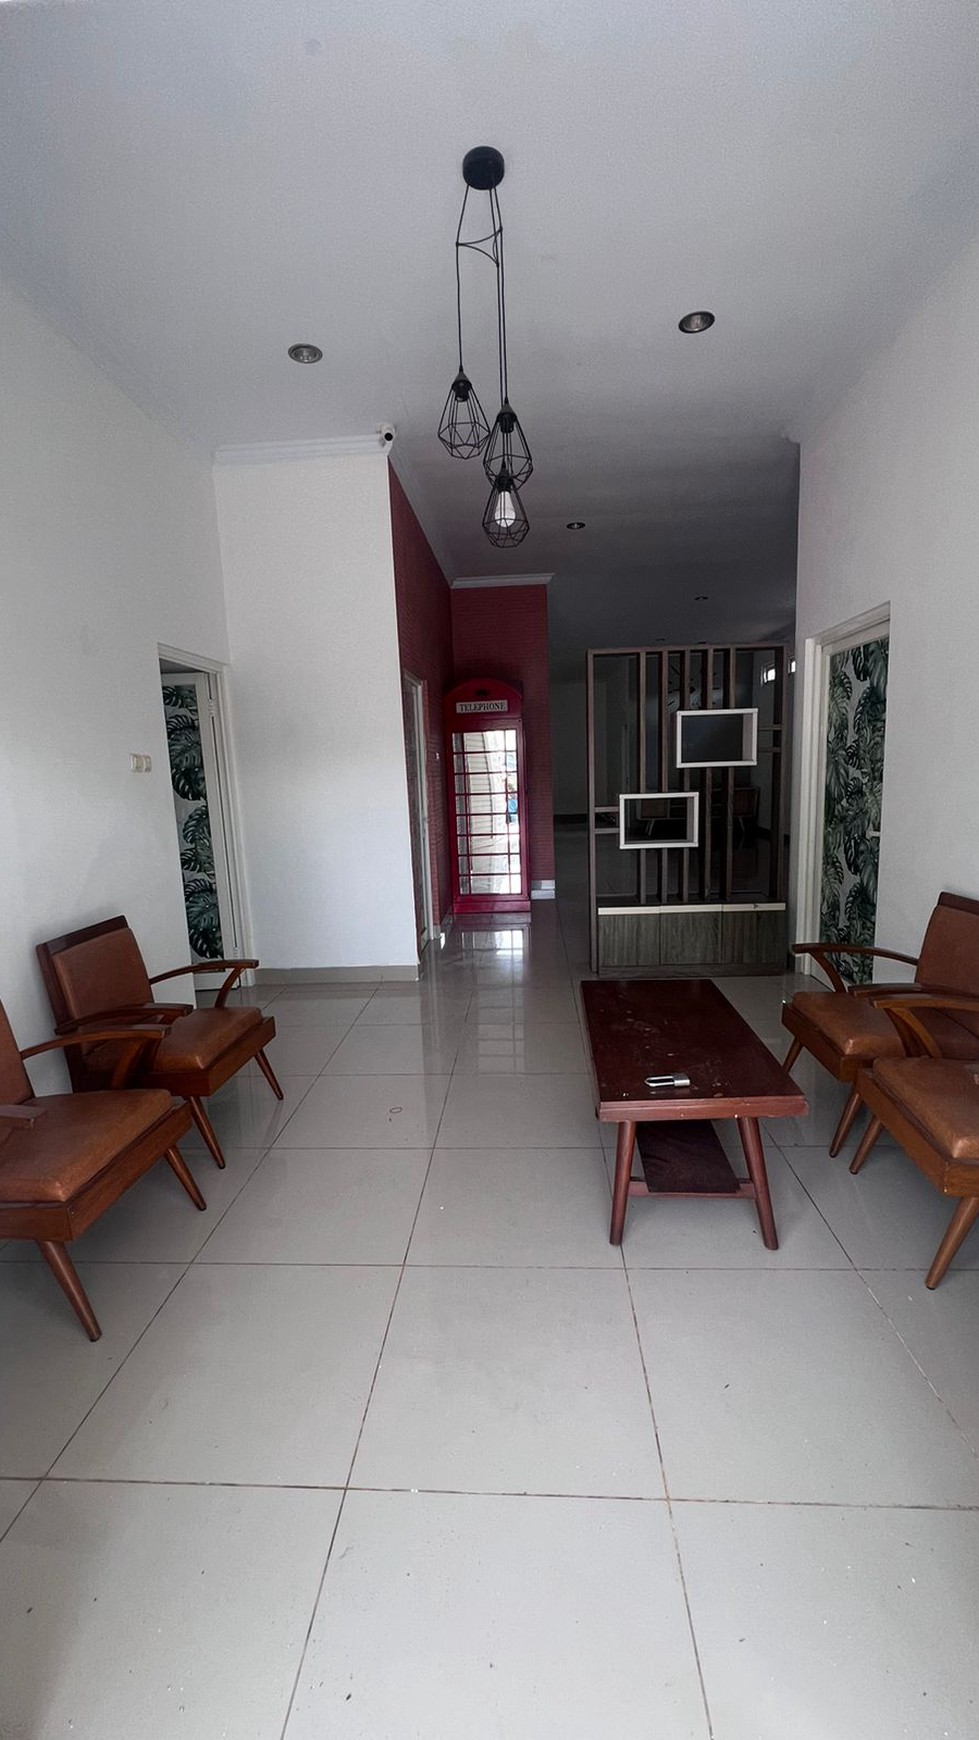 Rumah + Furniture  Siap Huni Di Jl Parangtritis Km 5 Dekat Kampus ISI Yogyakarta